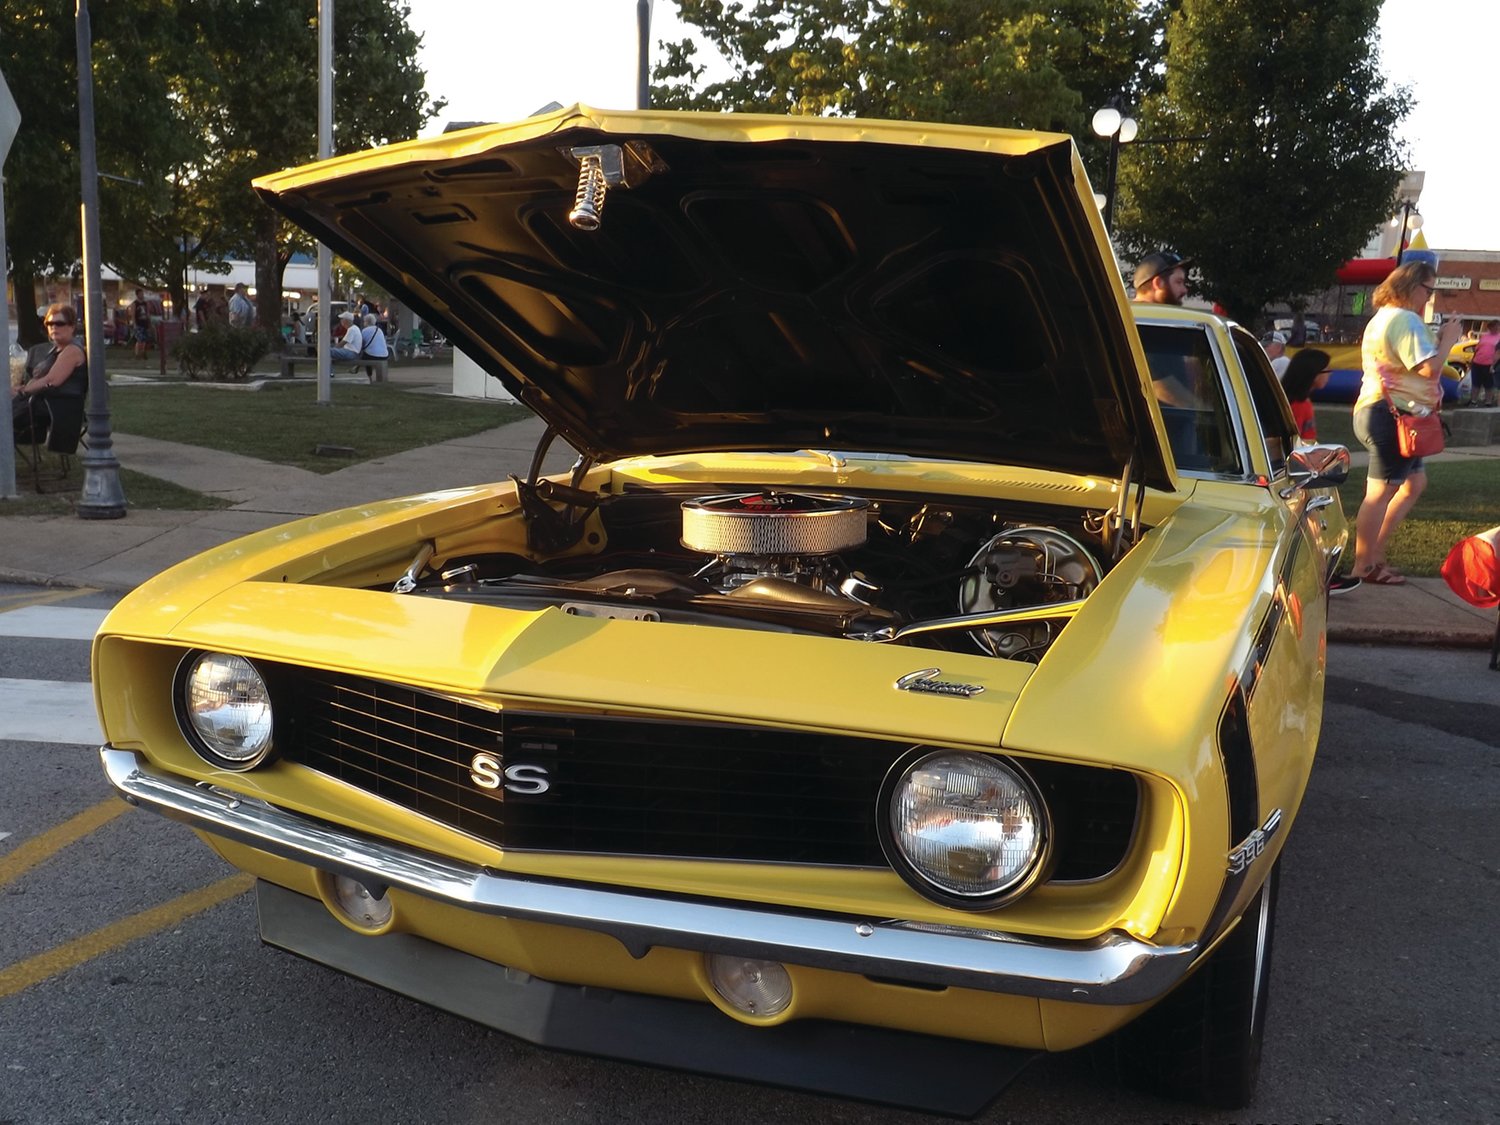 Daytona Yellow Camero with 396 engine.